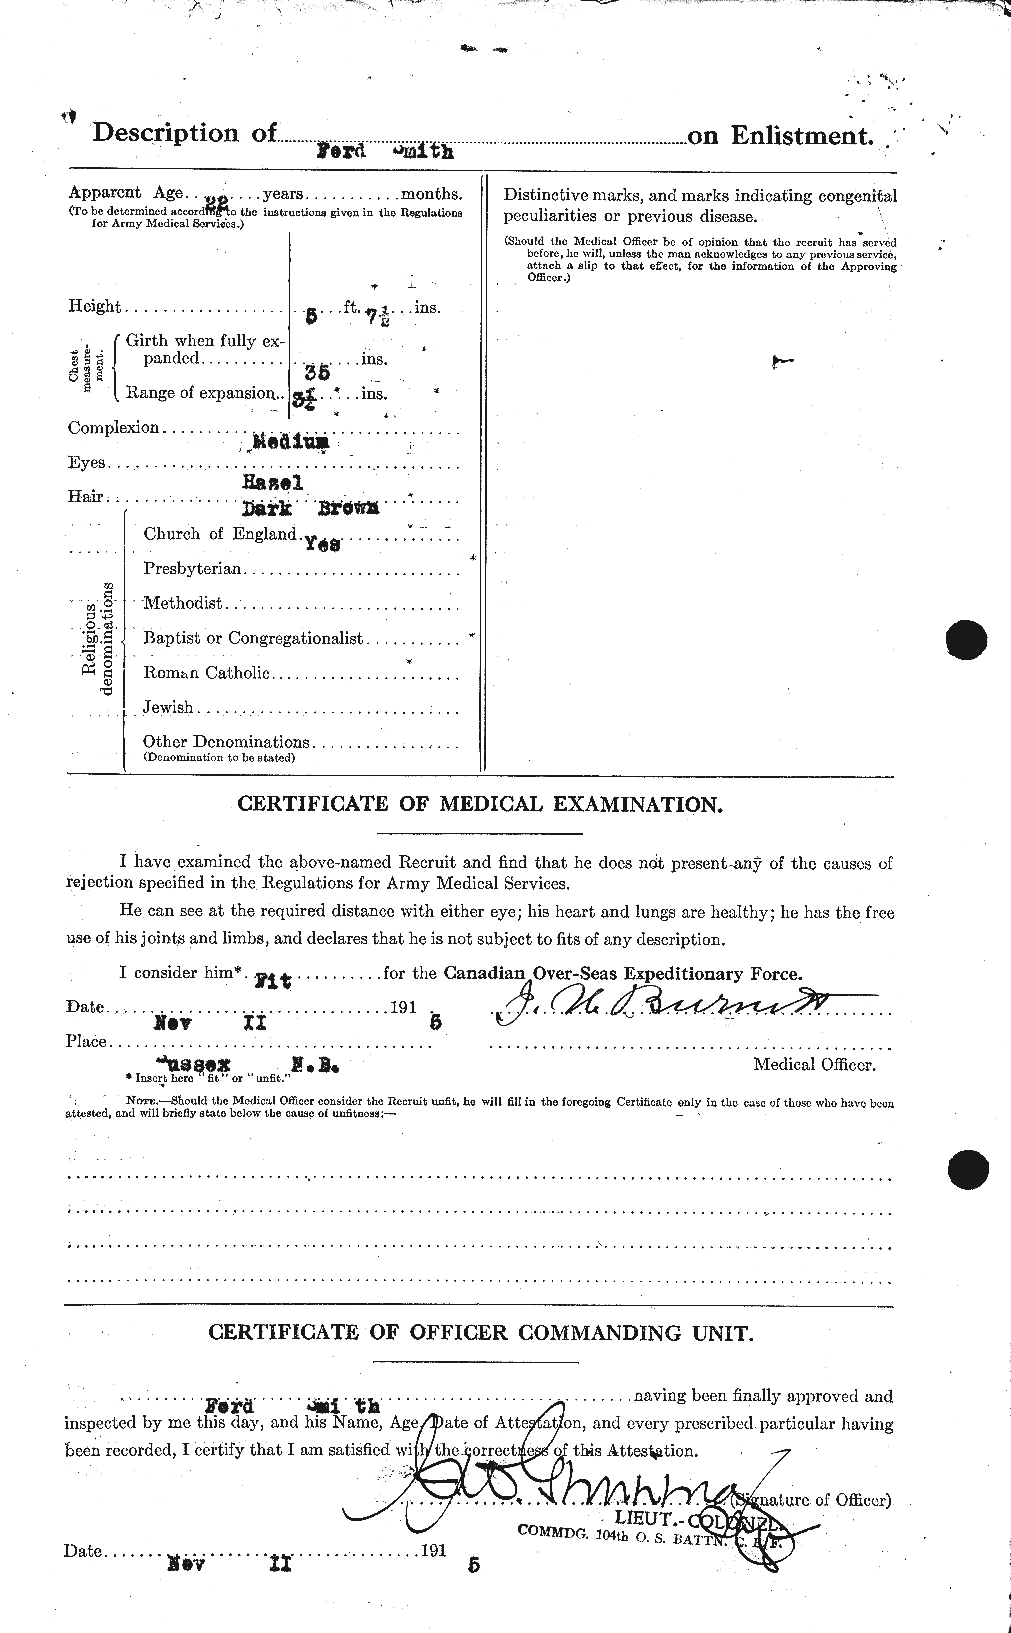 Dossiers du Personnel de la Première Guerre mondiale - CEC 107425b